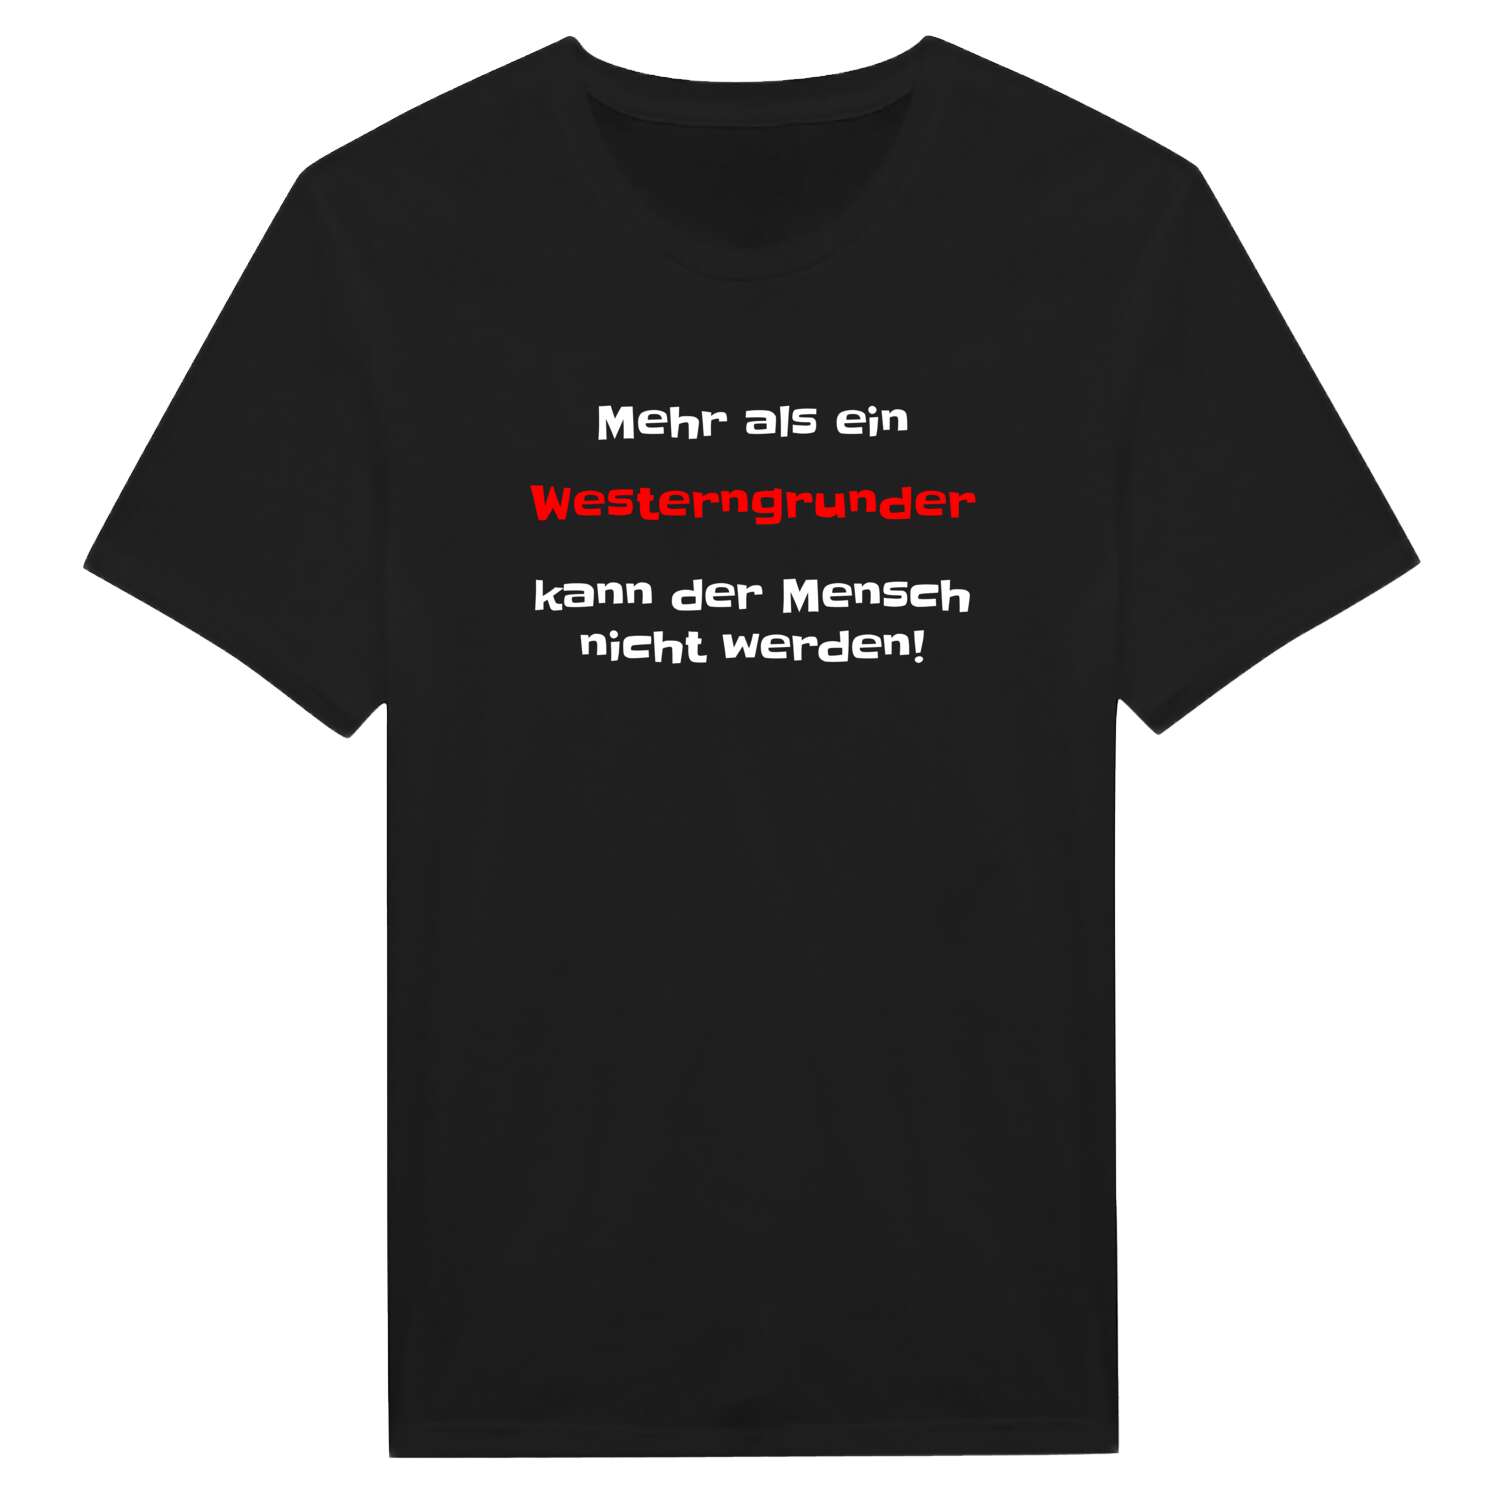 Westerngrund T-Shirt »Mehr als ein«